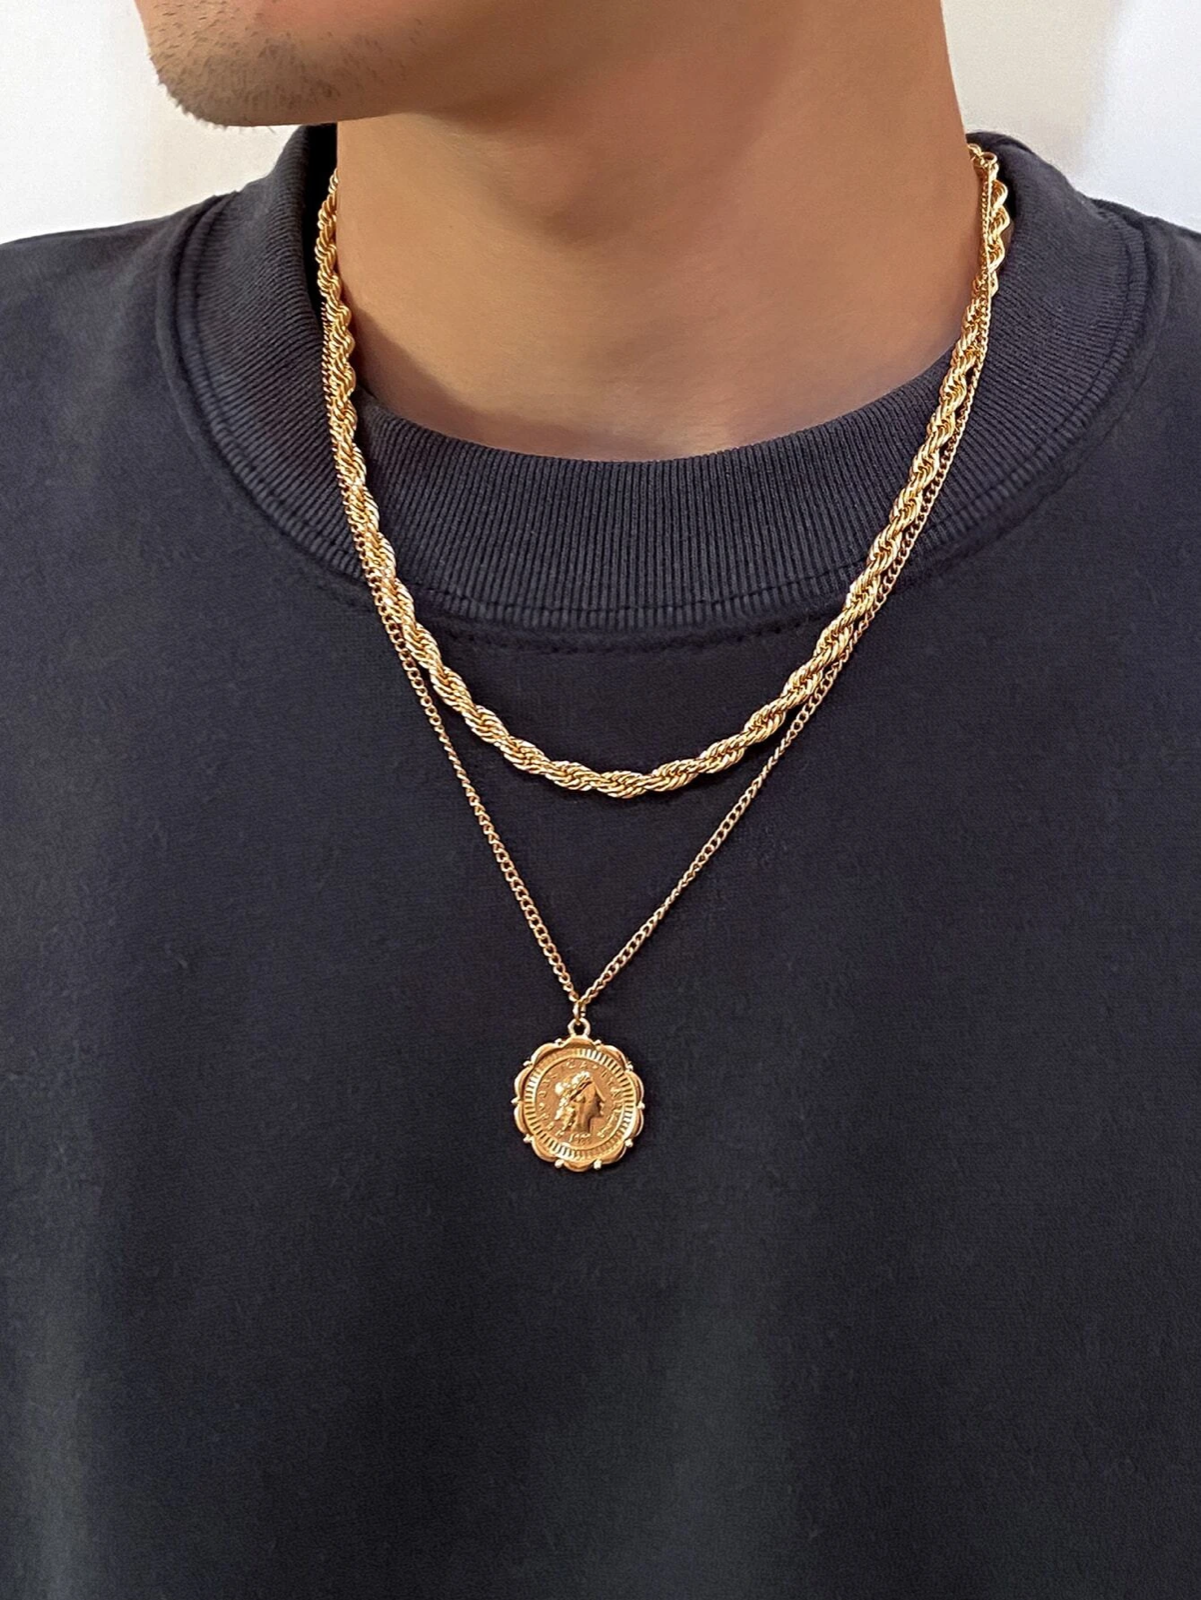 Cadena de Oro Para Hombres Italiana Collar Gargantilla Dije Medallas | eBay